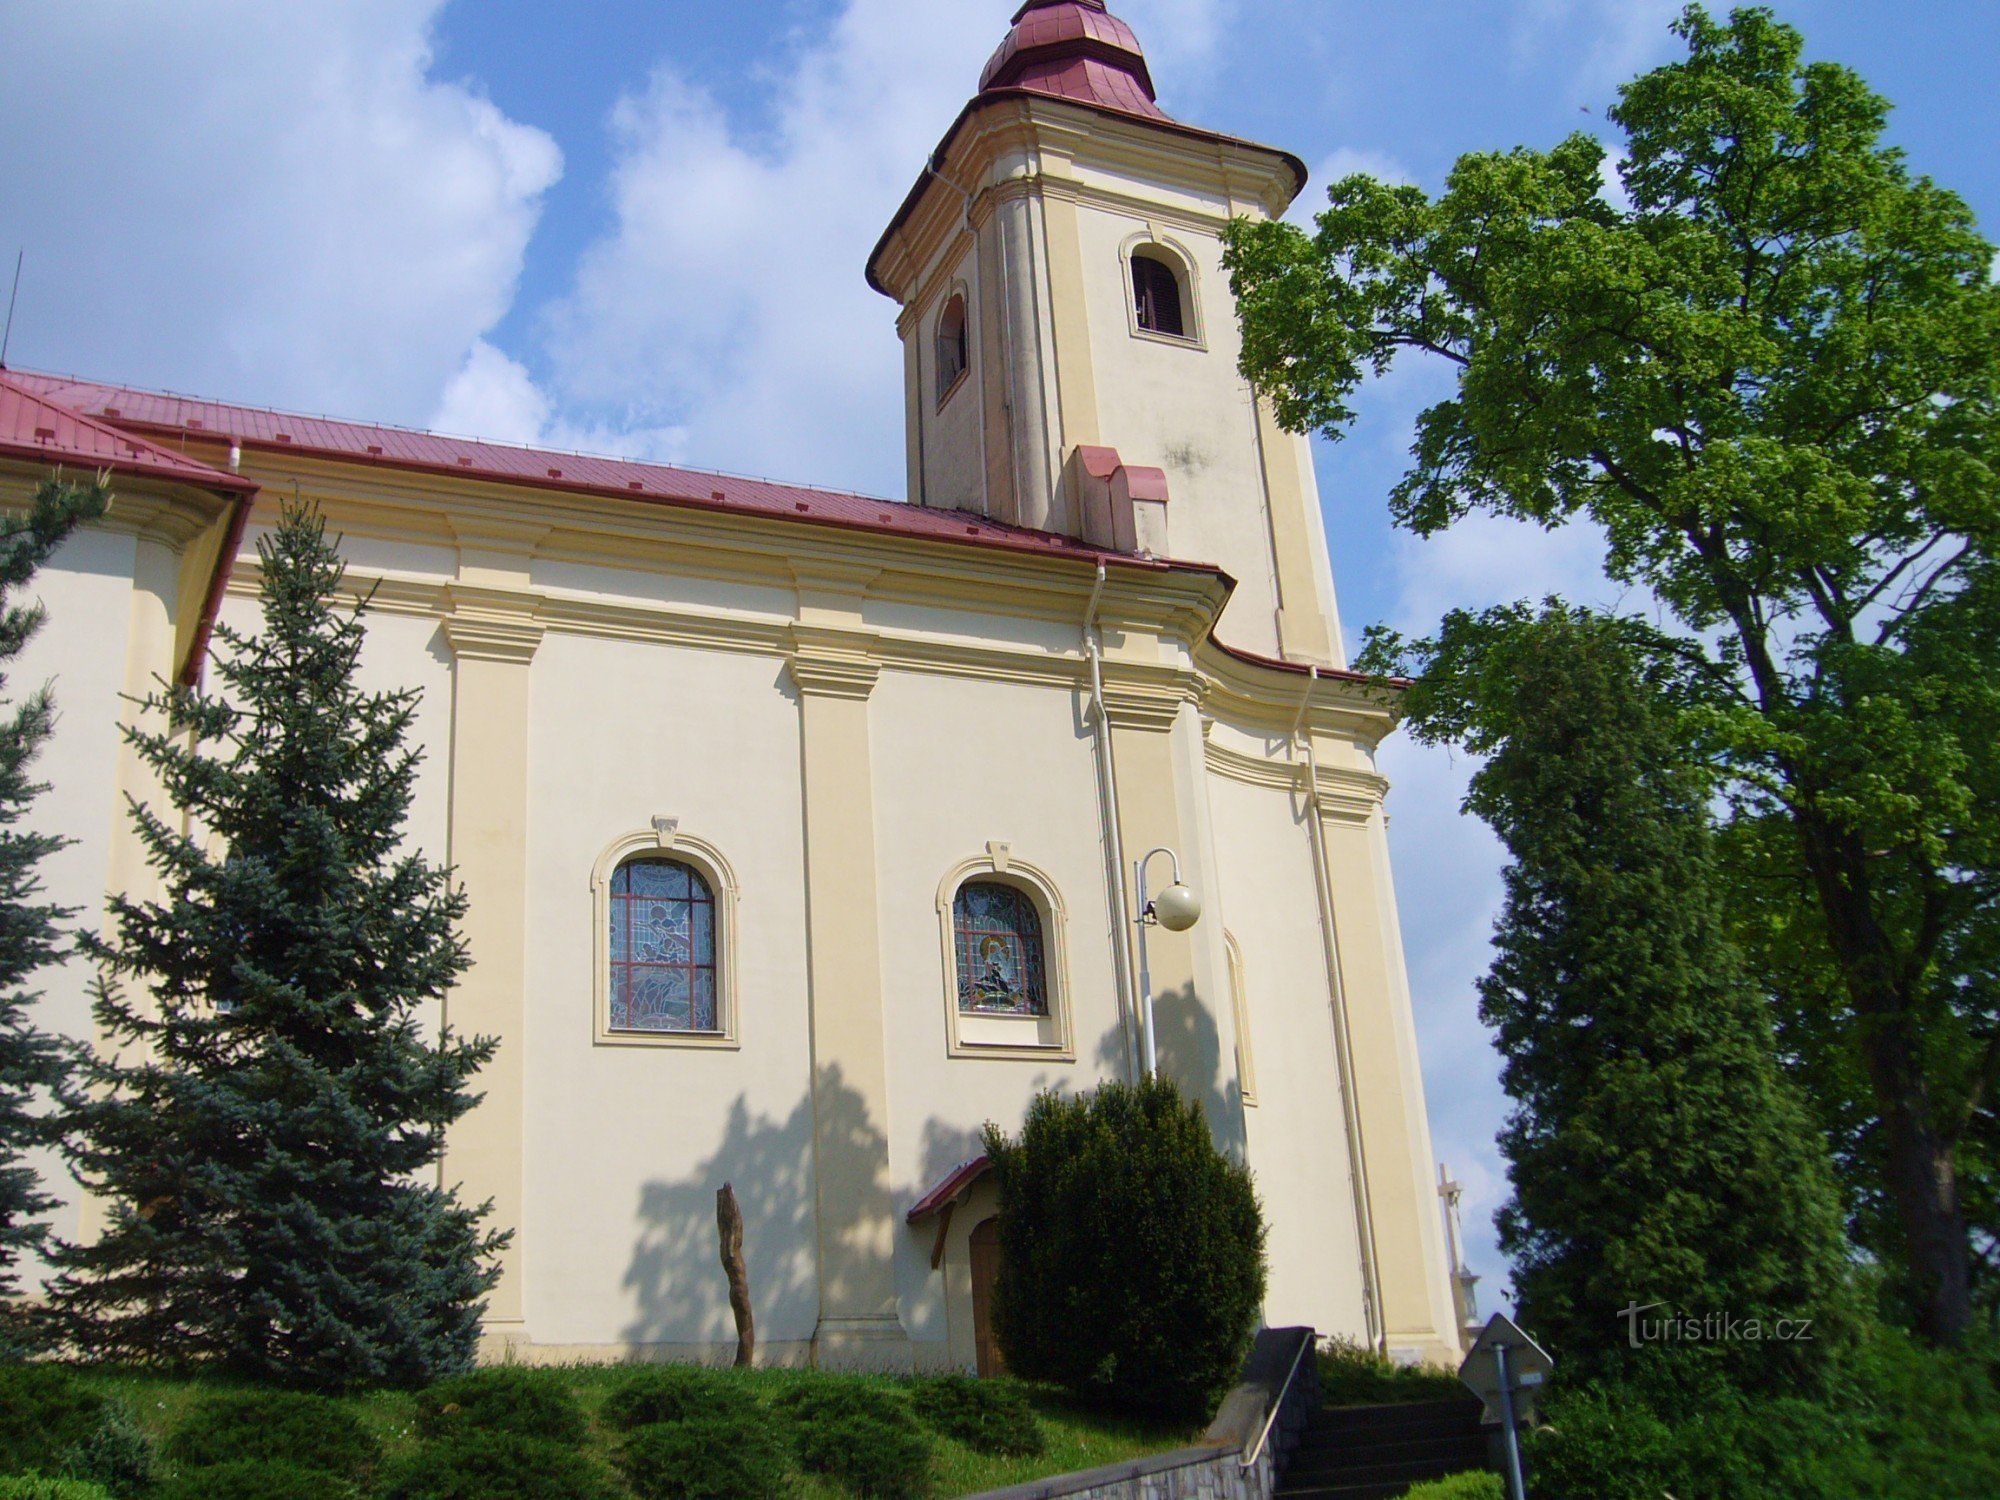 Plesná - church of St. Jakub